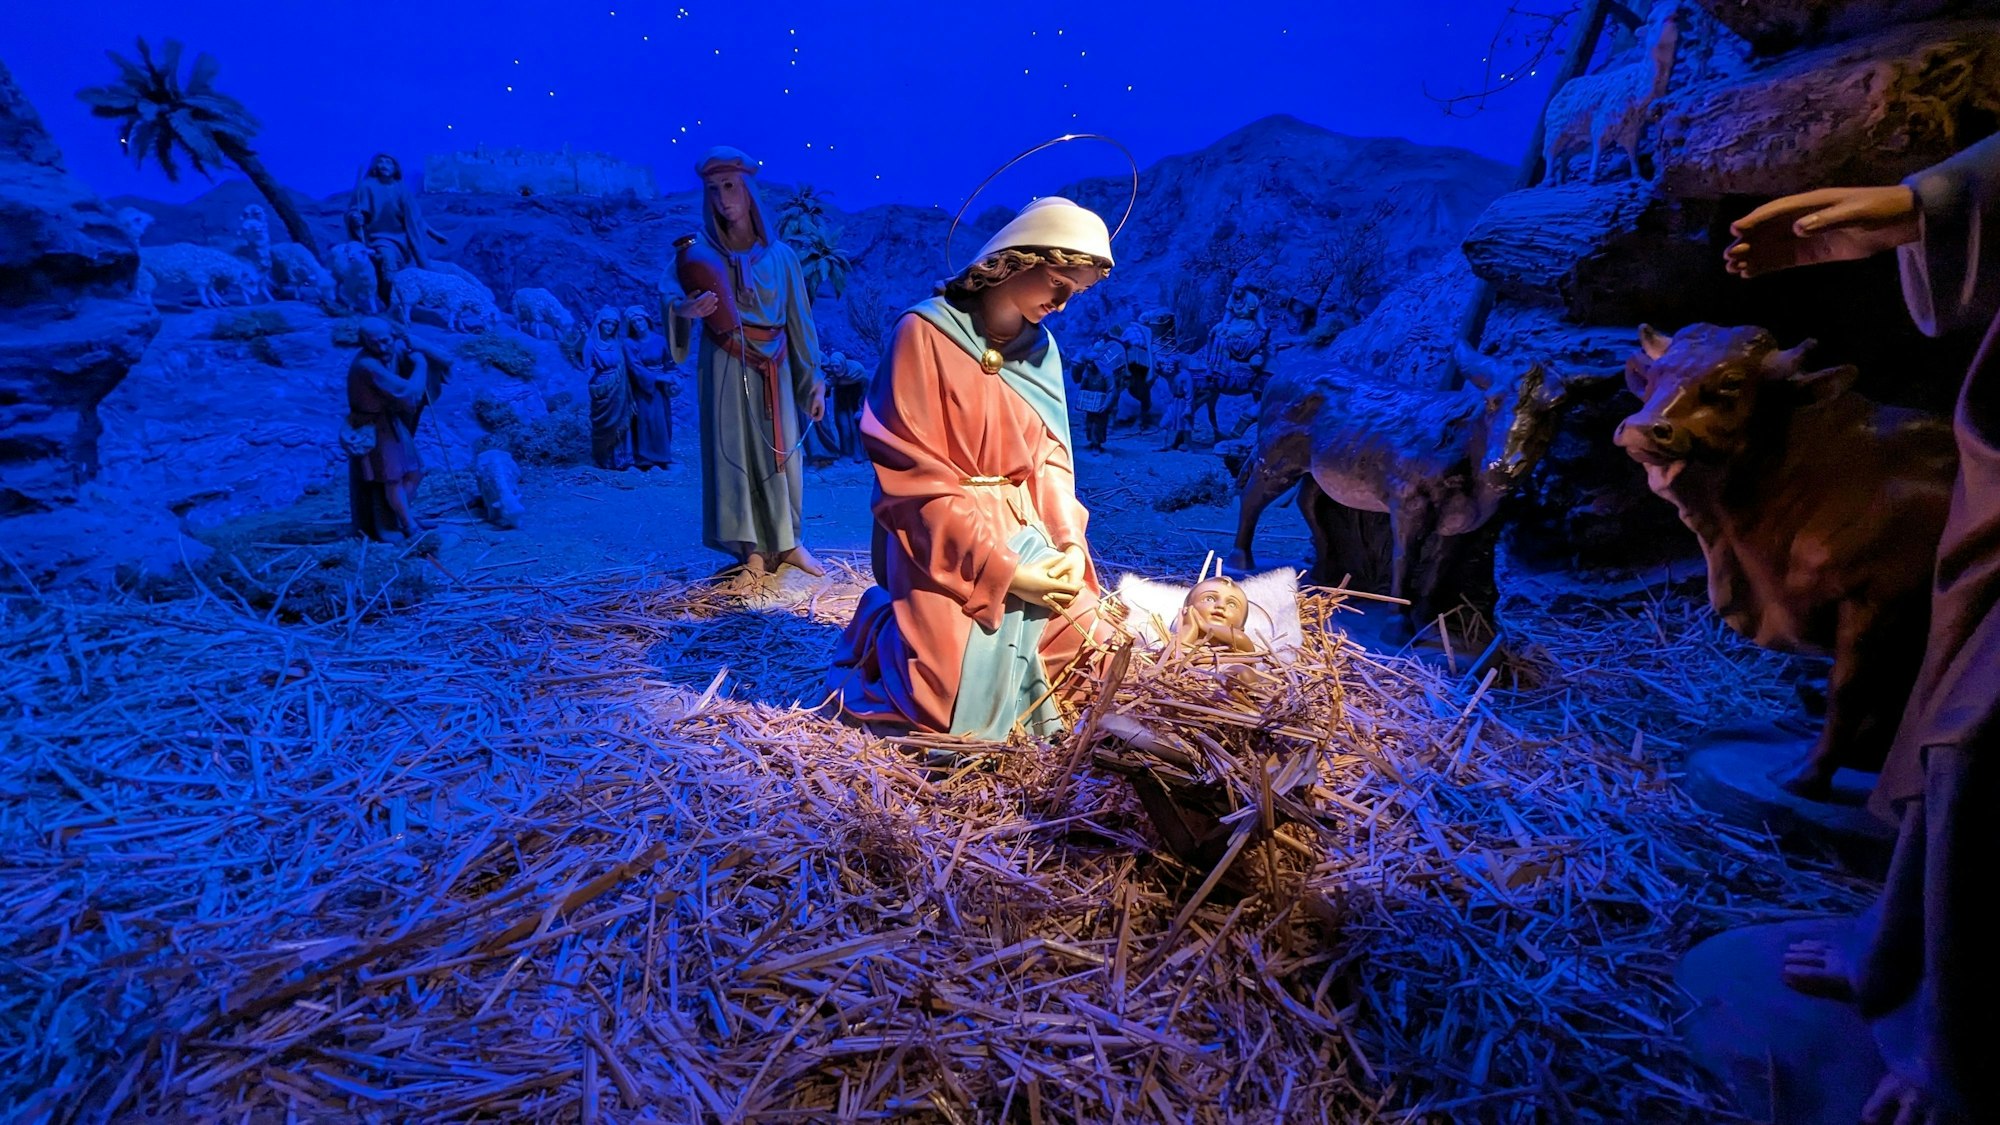 Das Bild zeigt eine Marienfigur, die vor einer mit Stroh gefüllten Krippe kniet, in der eine Babyfigur liegt.